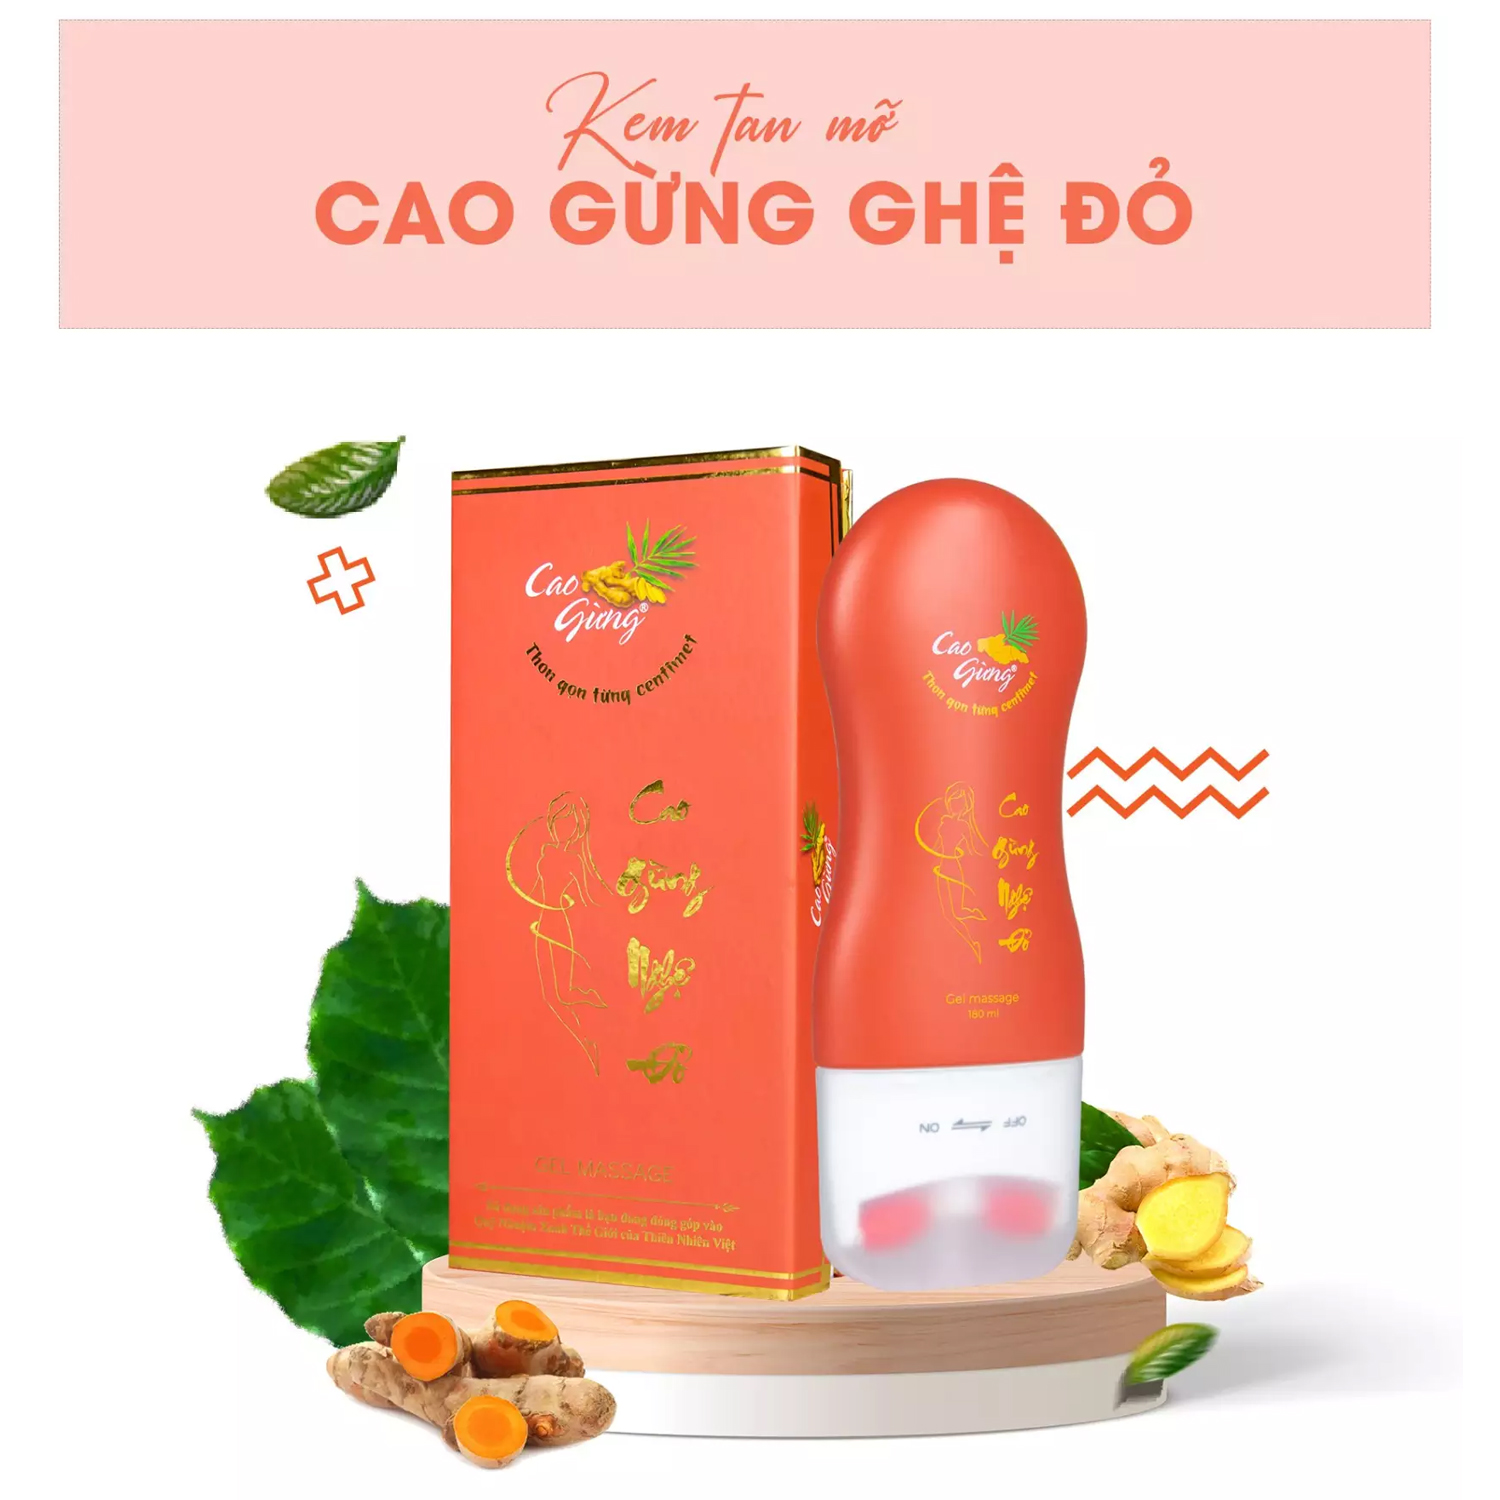 Review Kem tan mỡ Cao gừng Thiên nhiên Việt chính hãng giảm cân có tốt không?